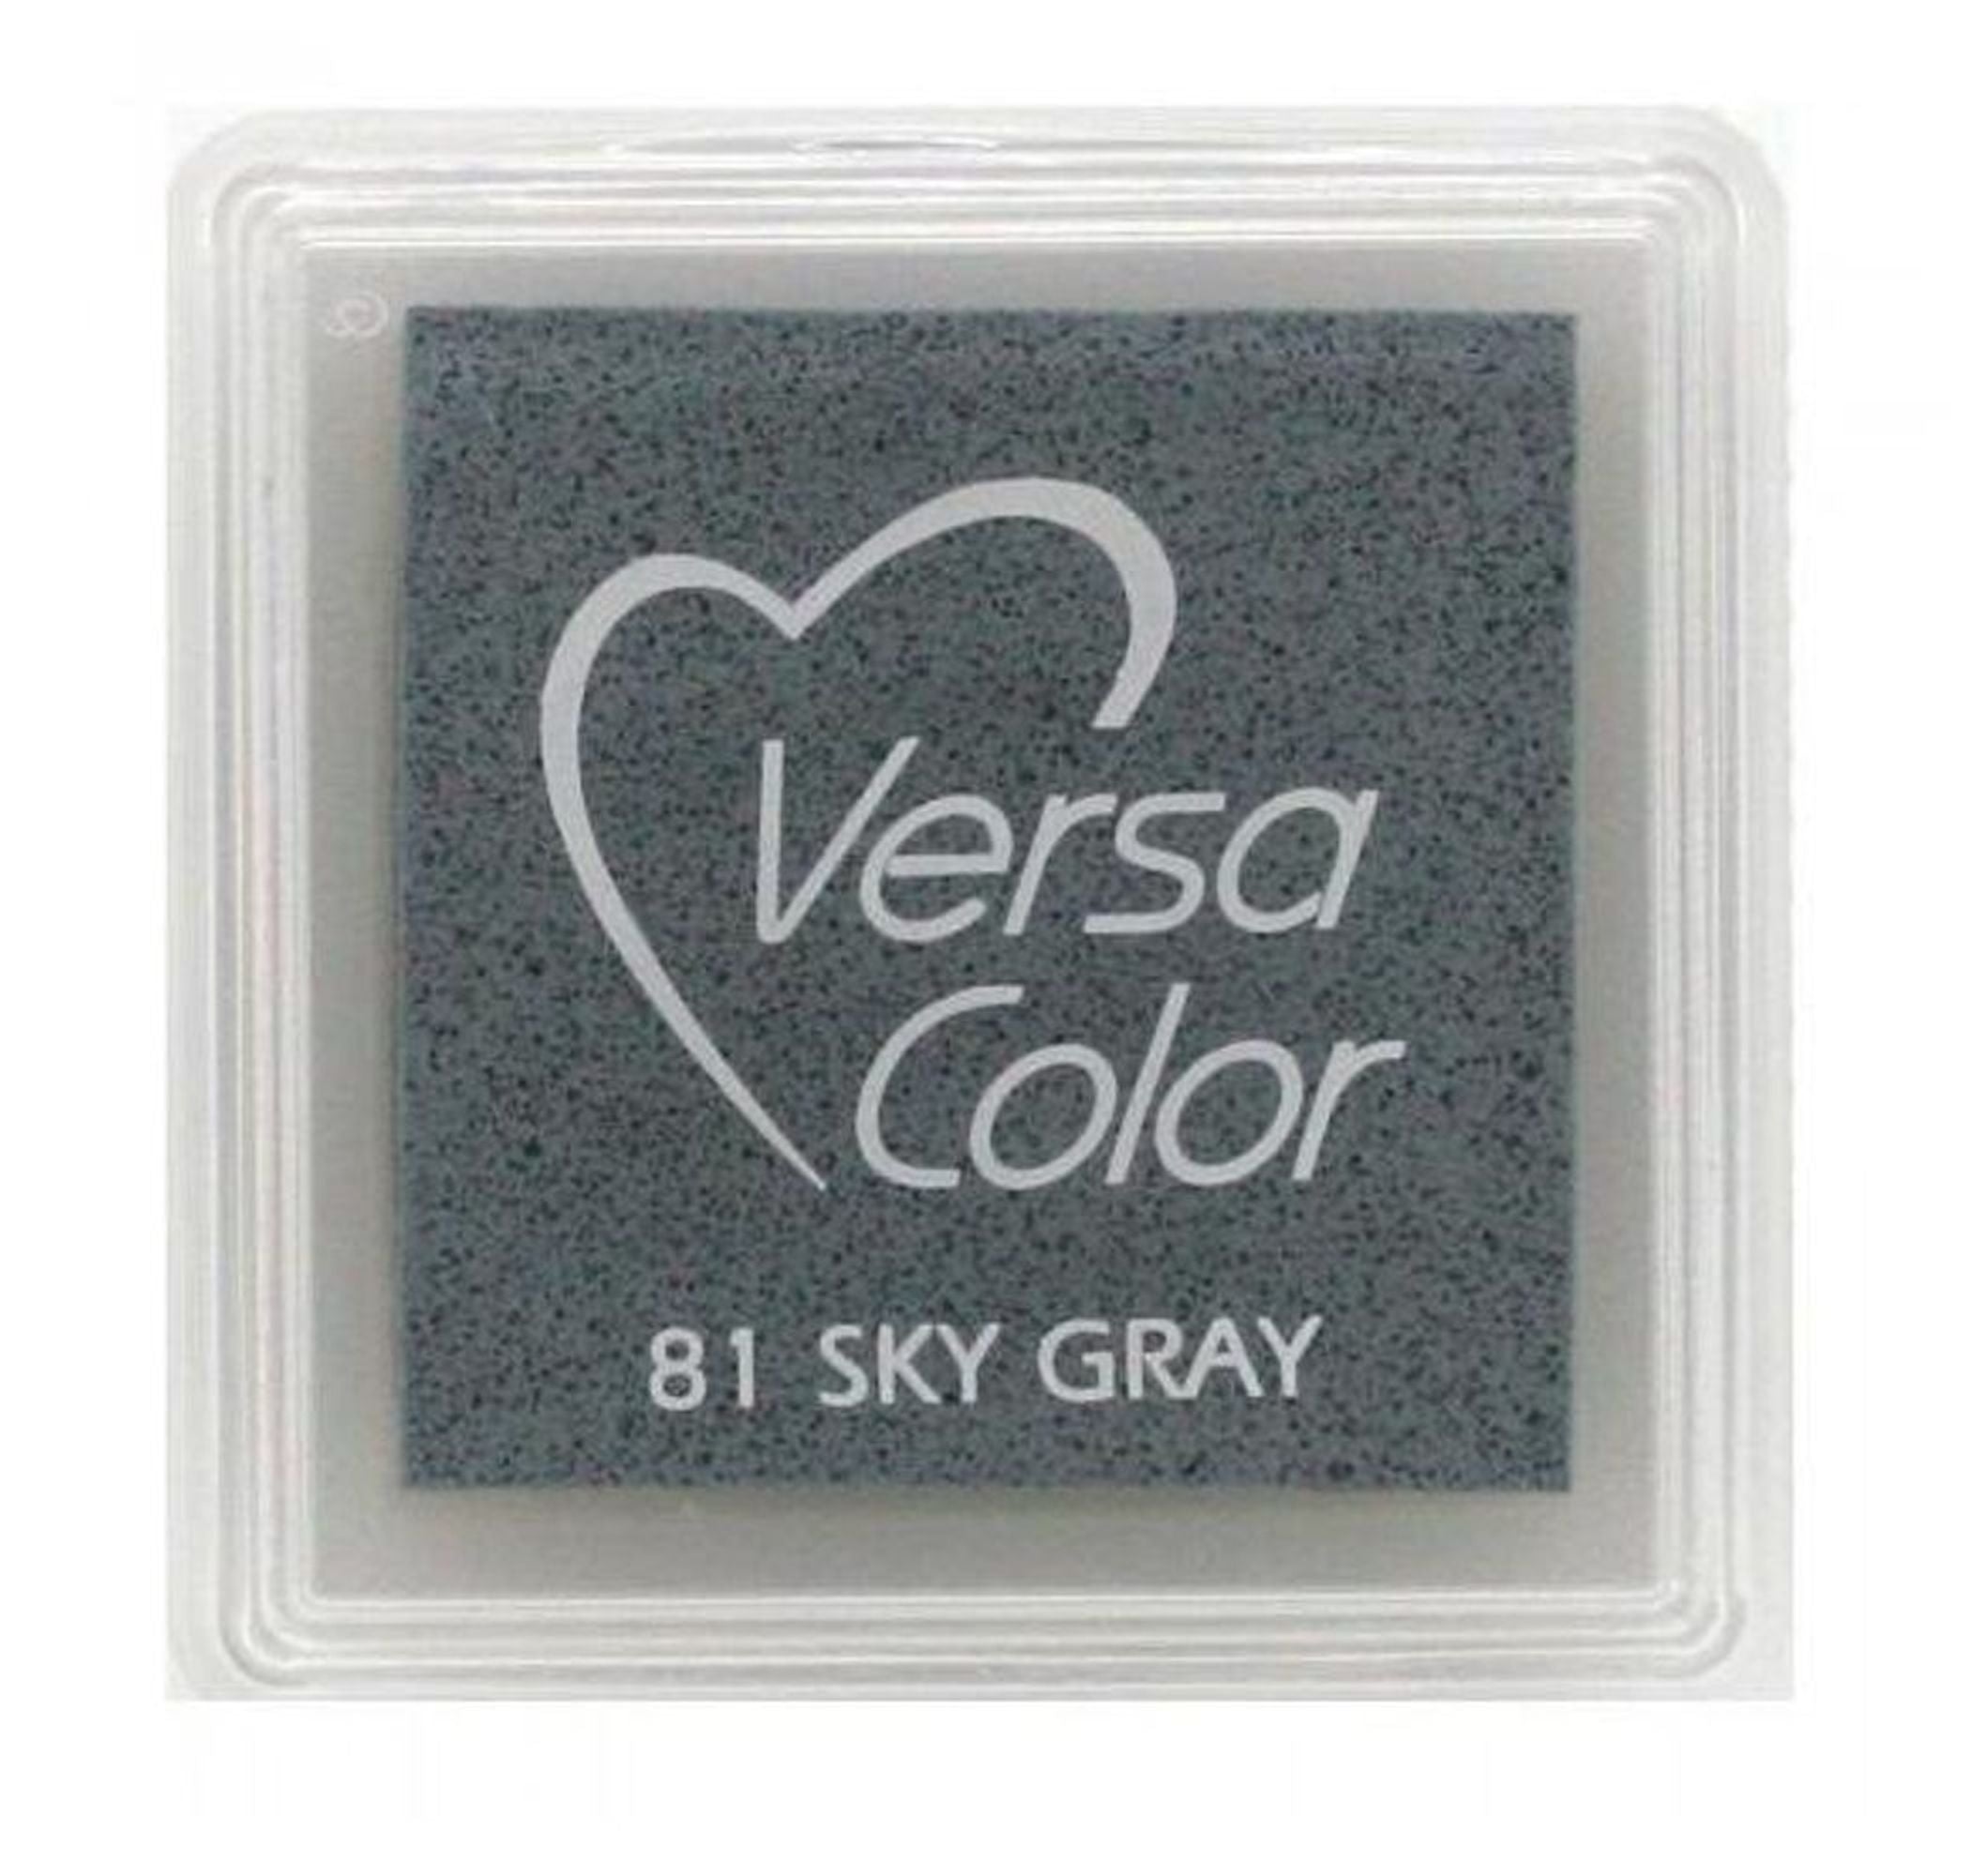 #colour_sky gray